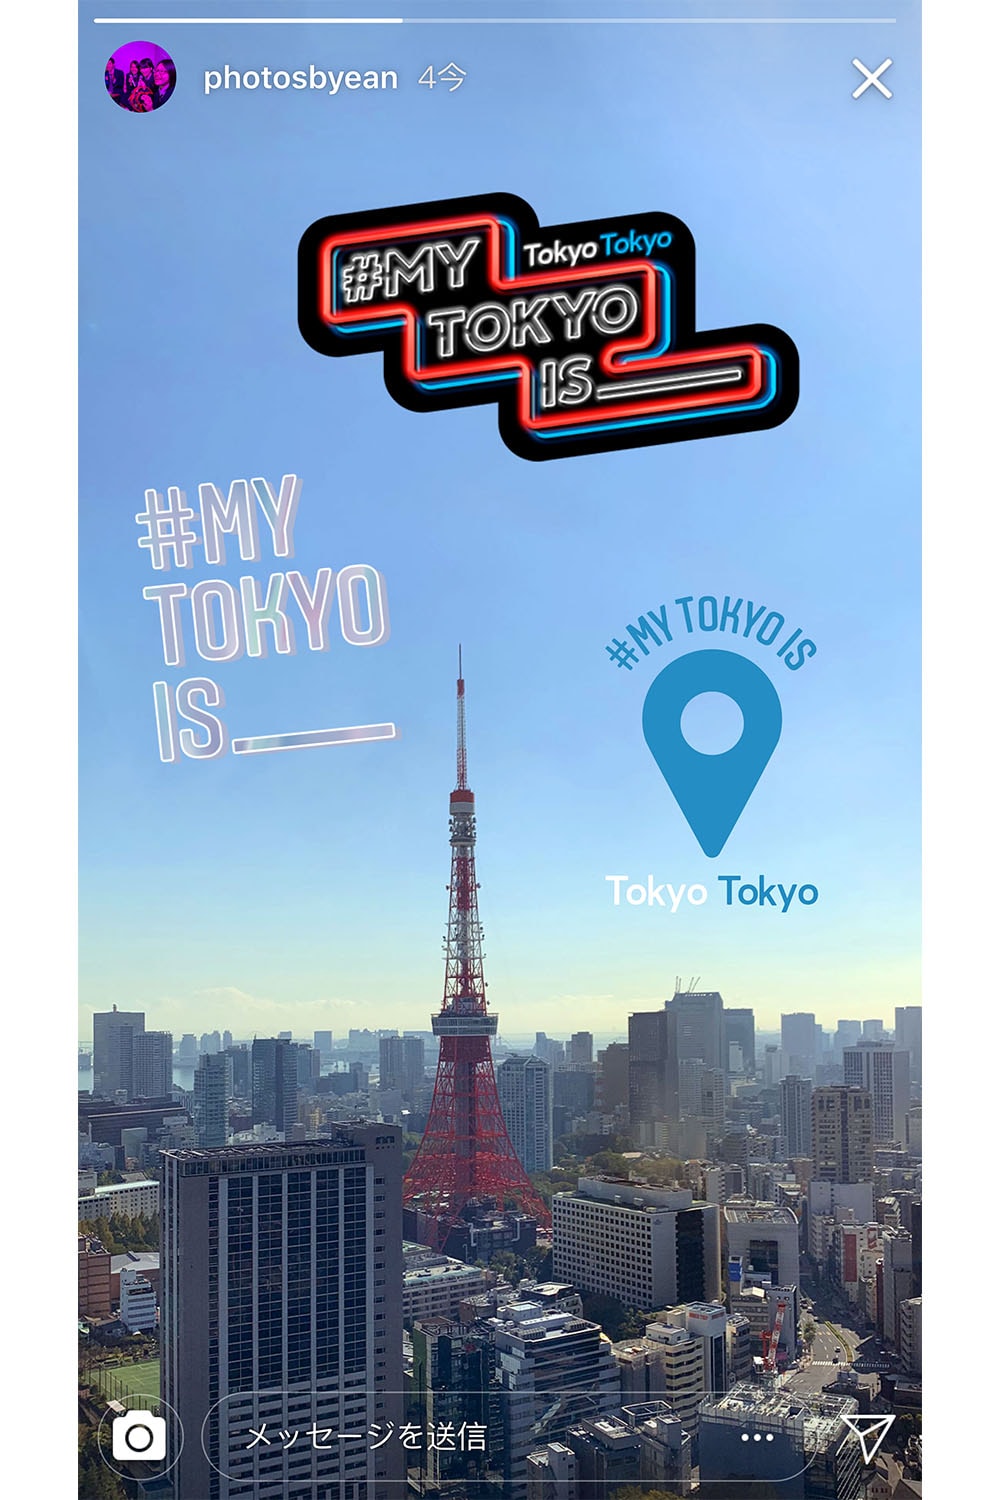 インスタグラム Instagram が東京都との共同キャンペーン“#MY TOKYO IS _____”をスタート